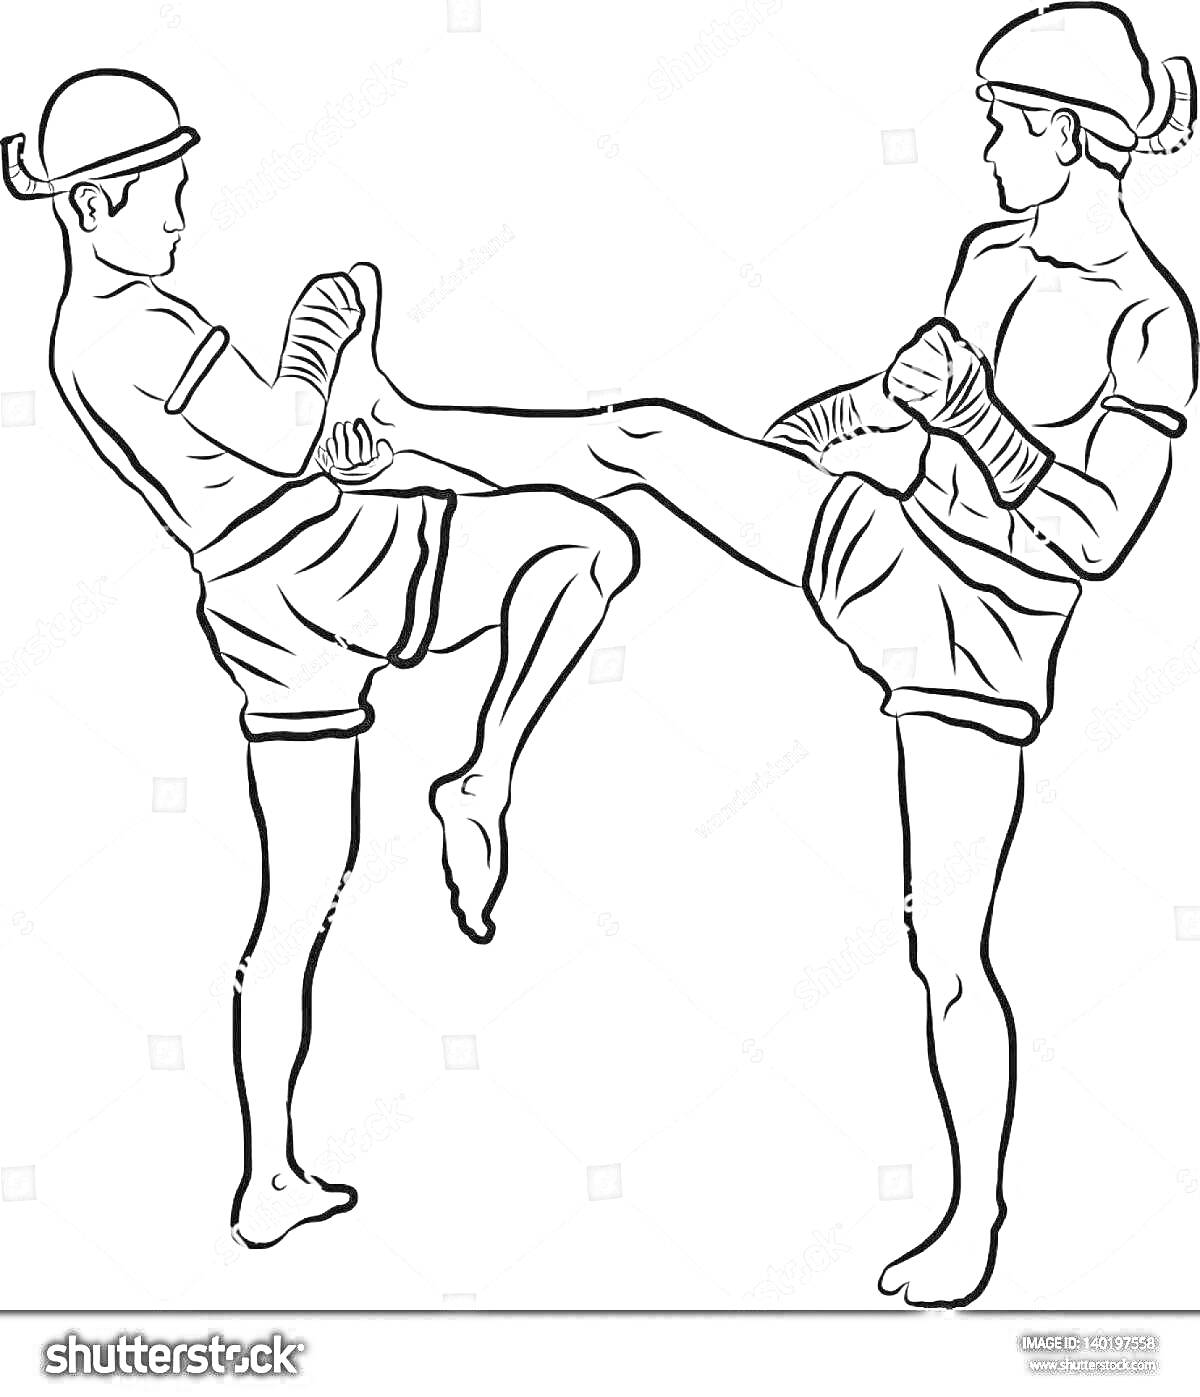 Два кикбоксера в защитных шлемах и перчатках обмениваются ударами ногами